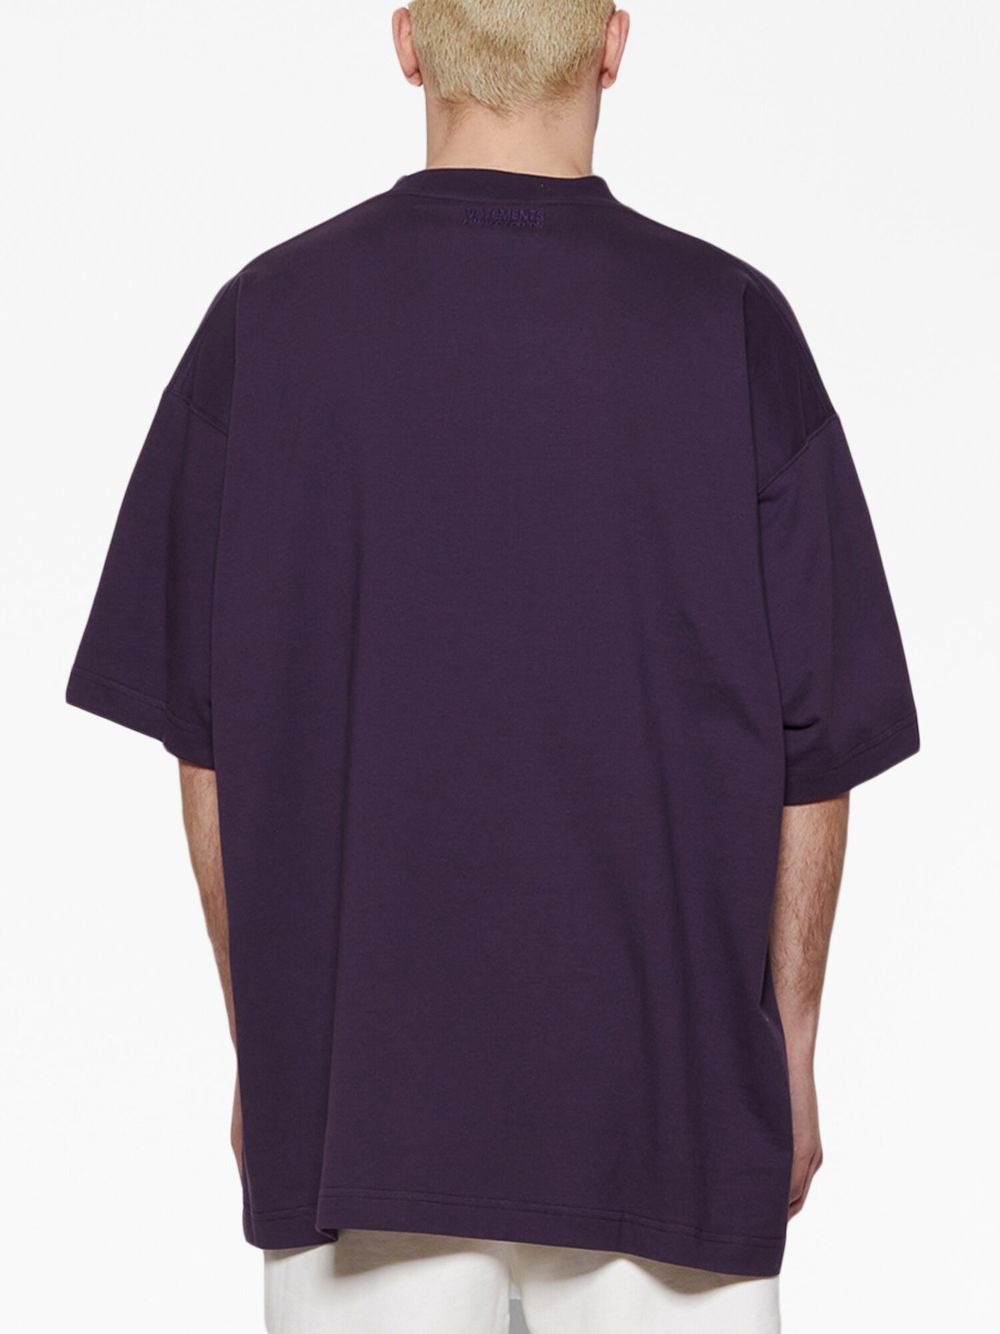 t-shirt paris violet